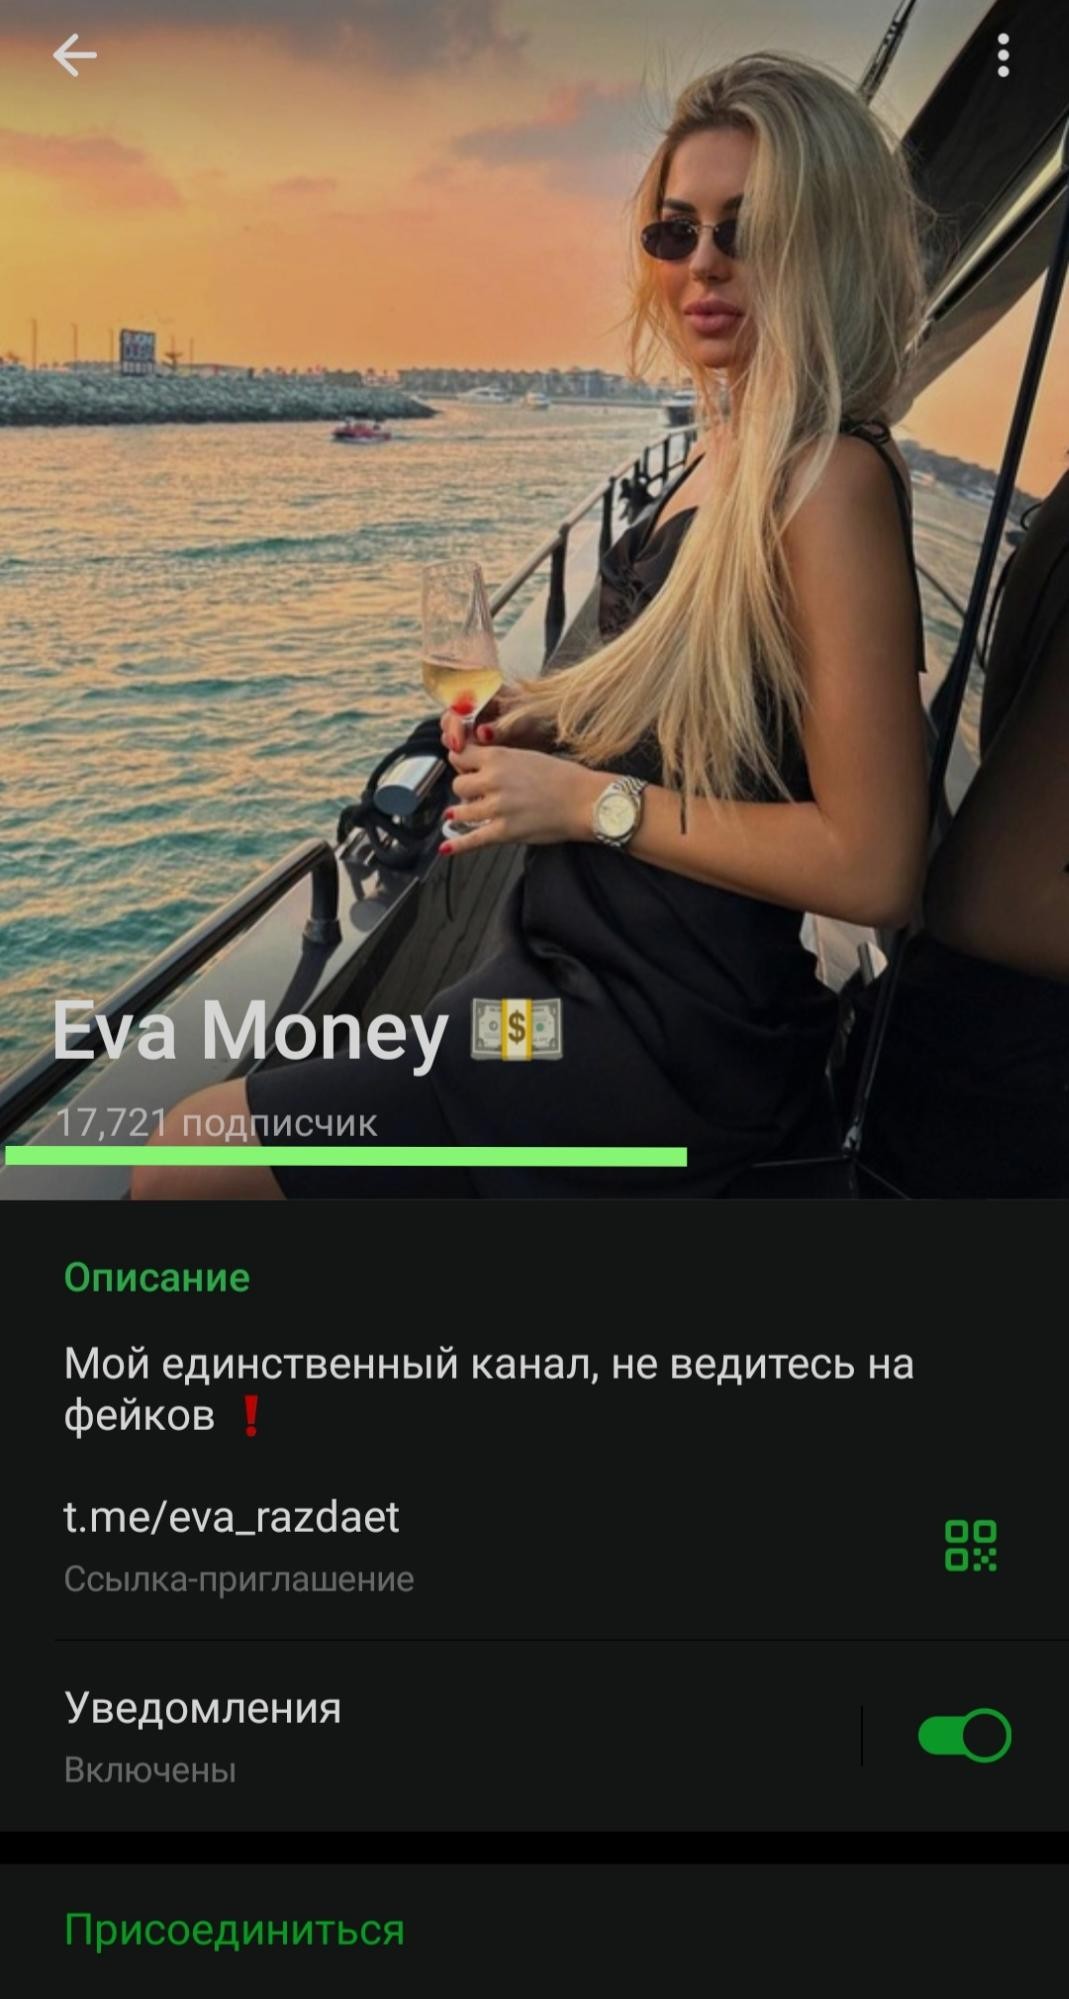 Eva Money обзор проекта